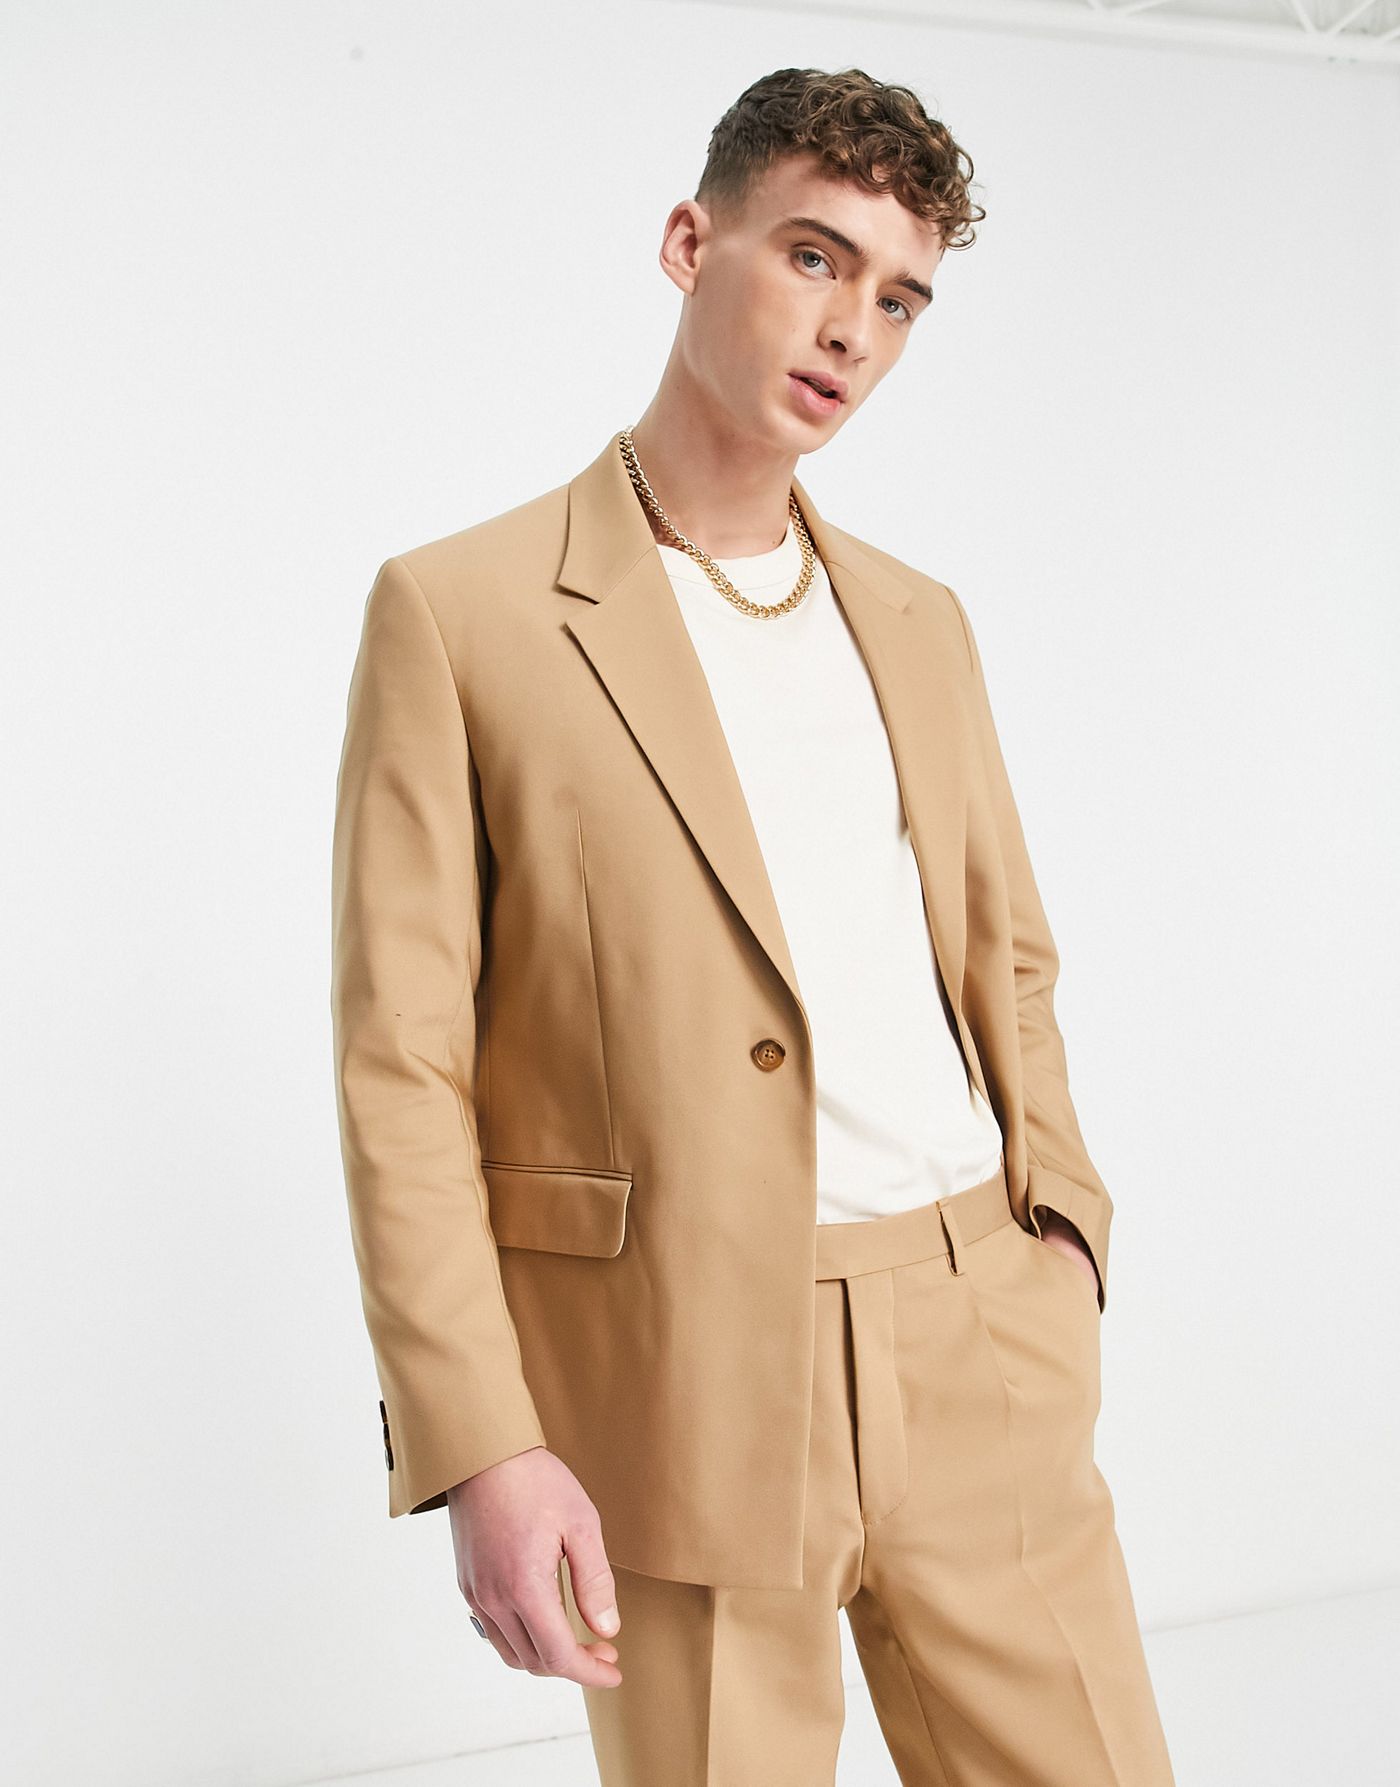 Viggo pierre suit jacket in beige